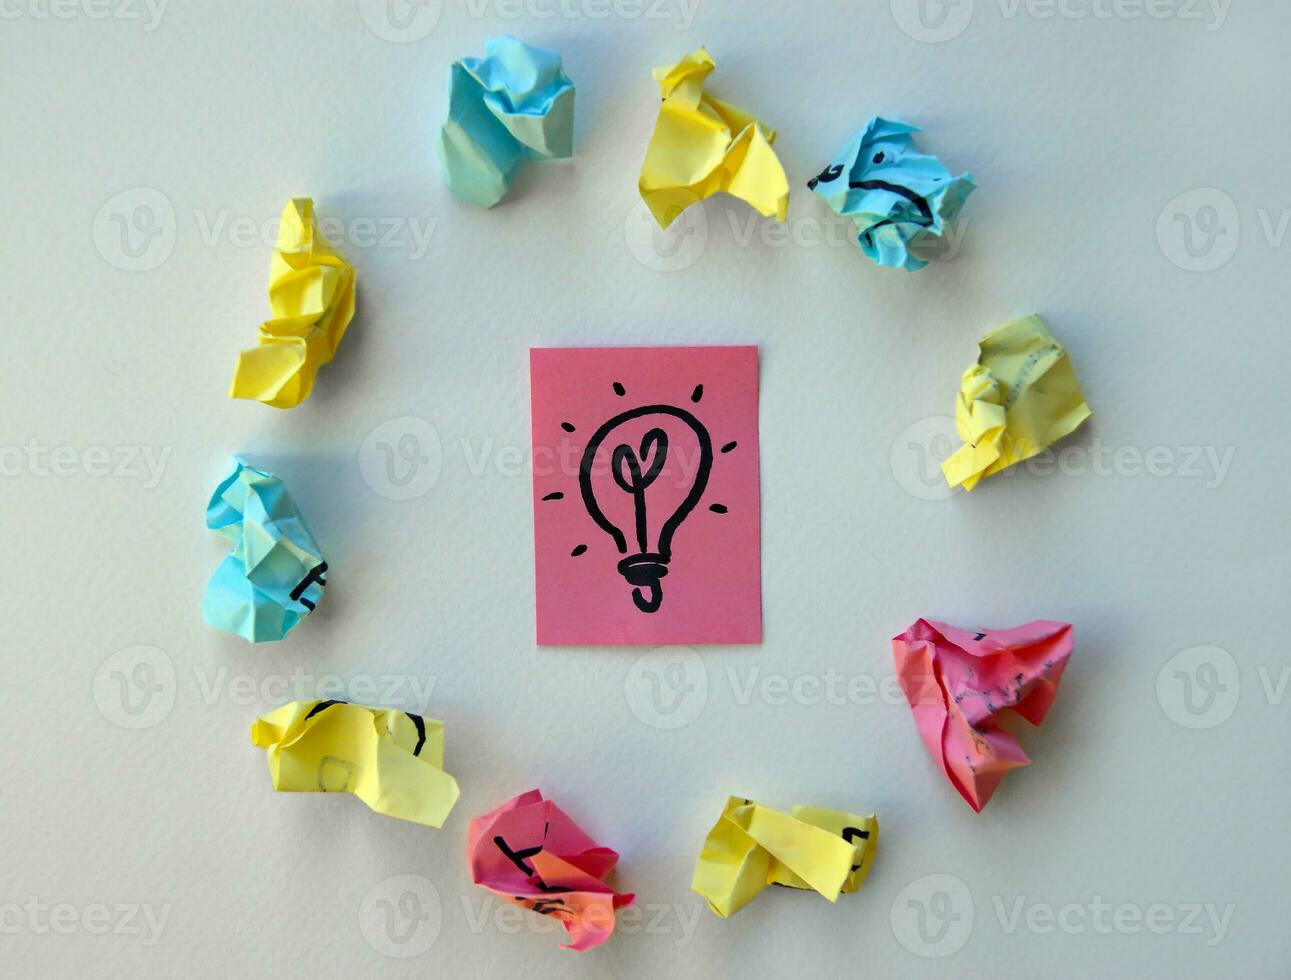 en el rosado sábana es pintado un lámpara como un símbolo de ideas y conocimiento. foto